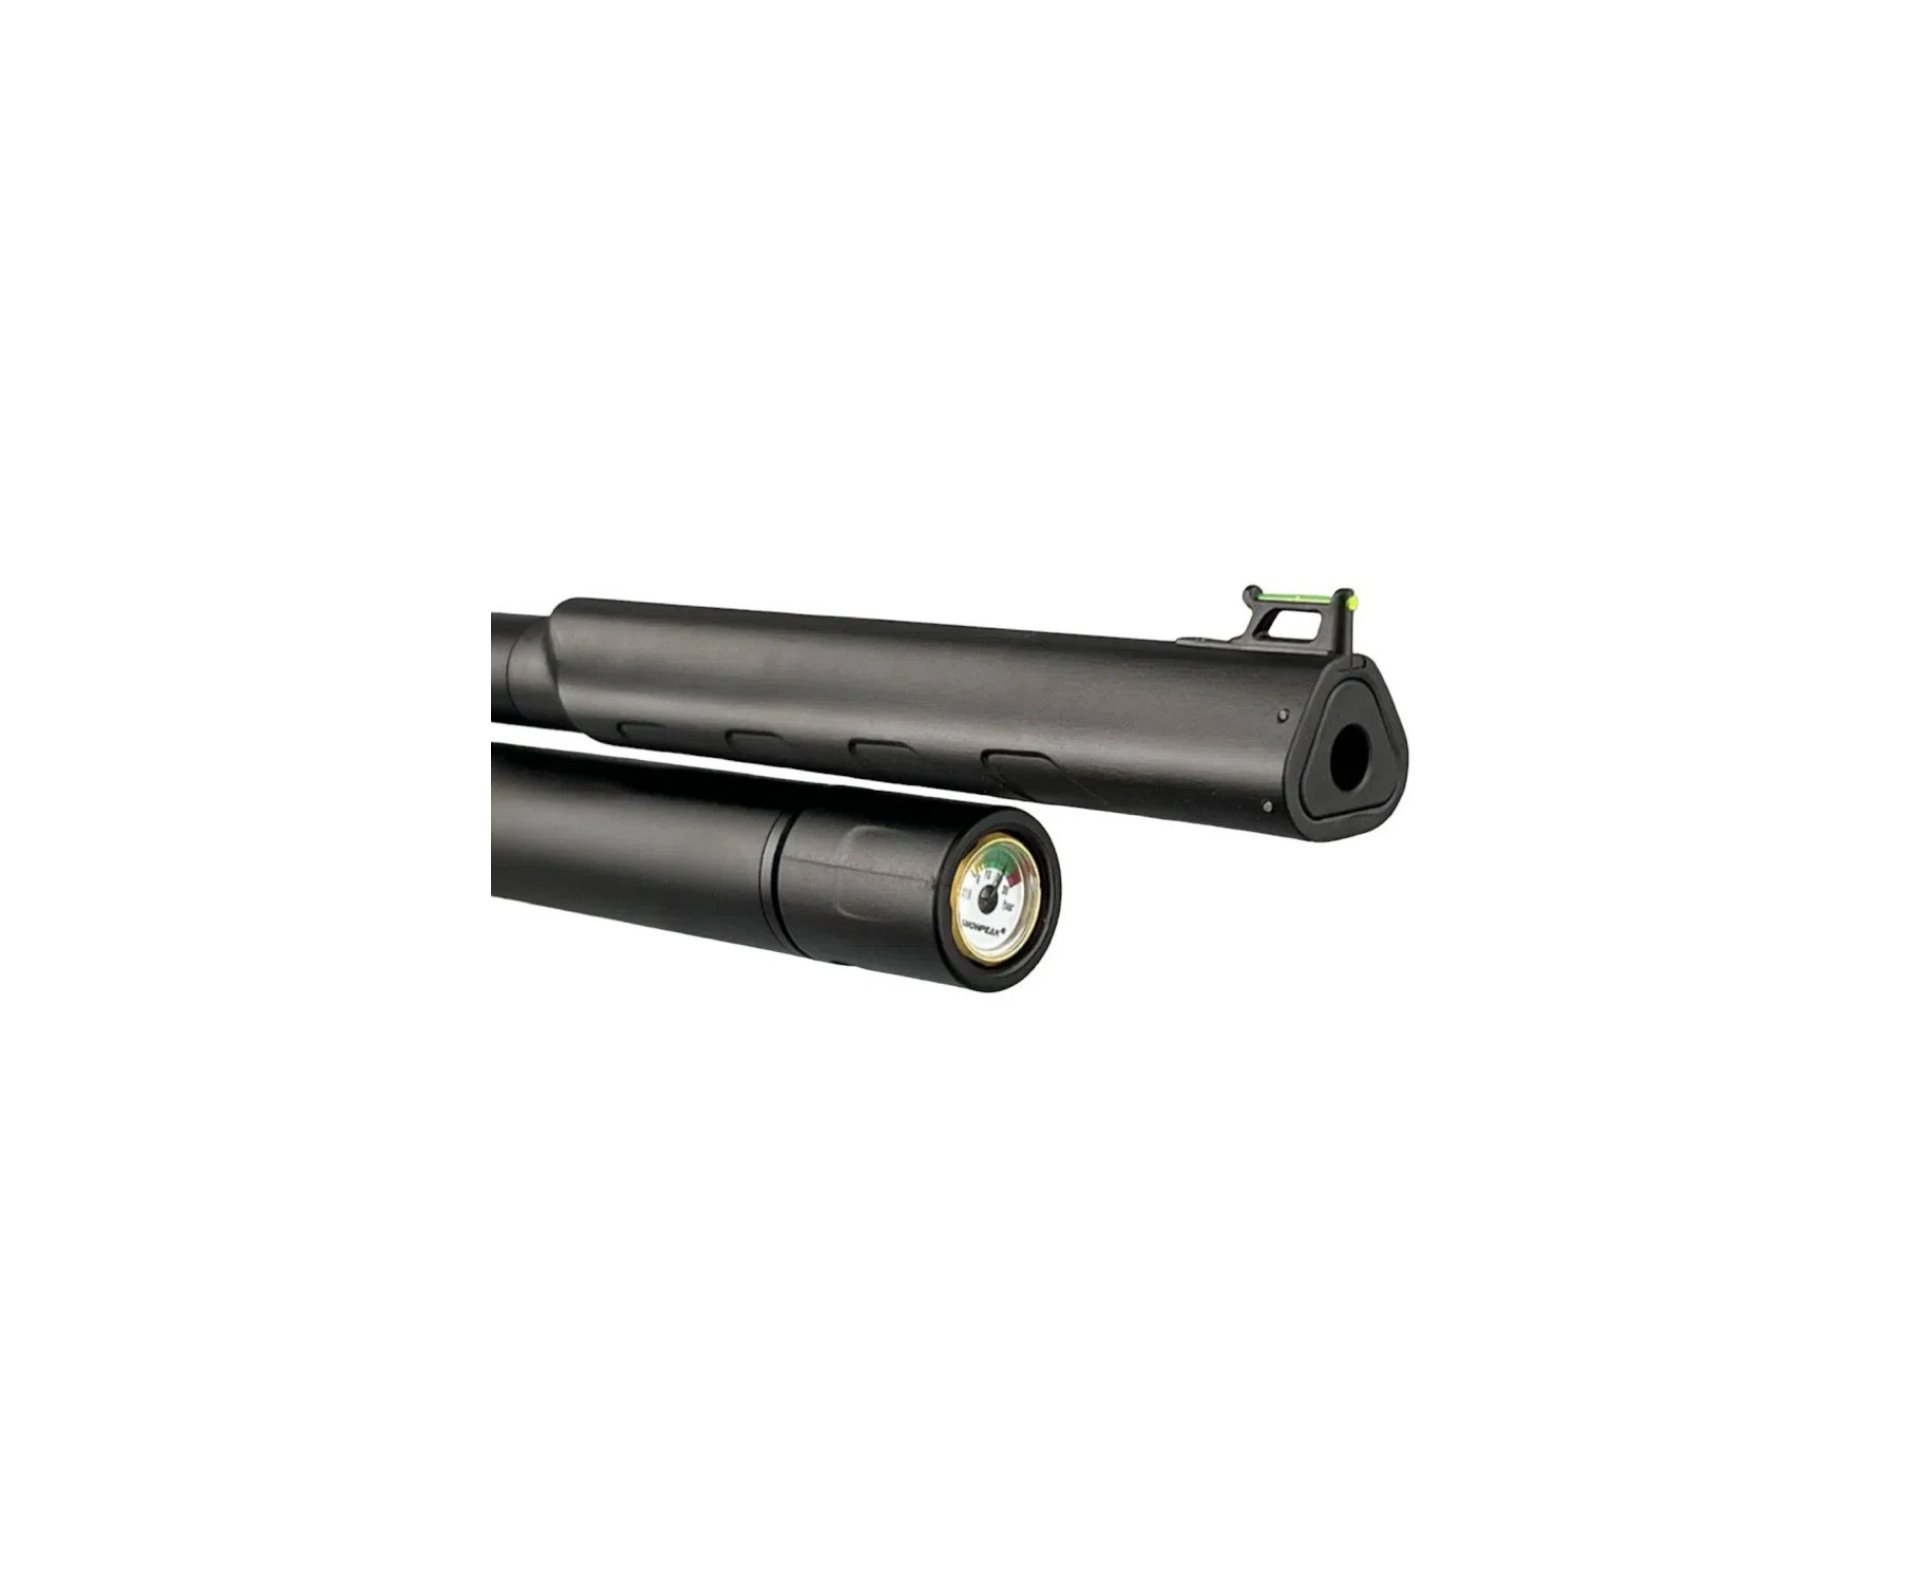 Carabina de Pressão PCP Artemis T-REX 5.5mm com Válvula Reguladora - Fixxar + Bomba + Capa + Chumbinho + Kamuff + Alvos